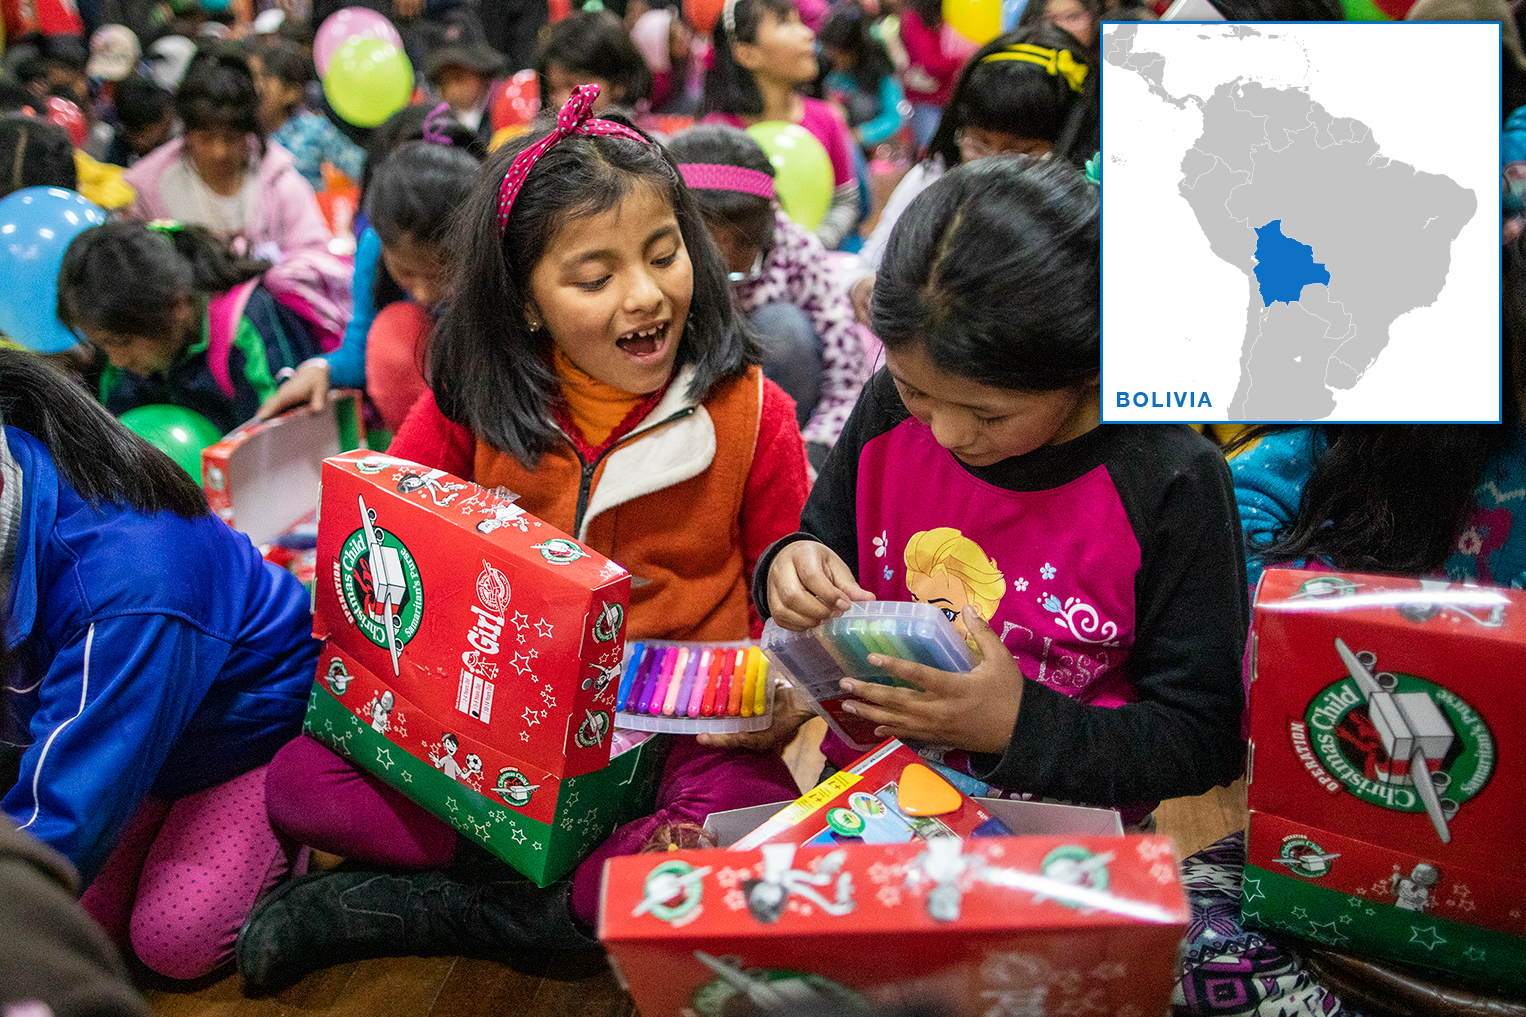 Operation Christmas Child encourages shoebox gifts